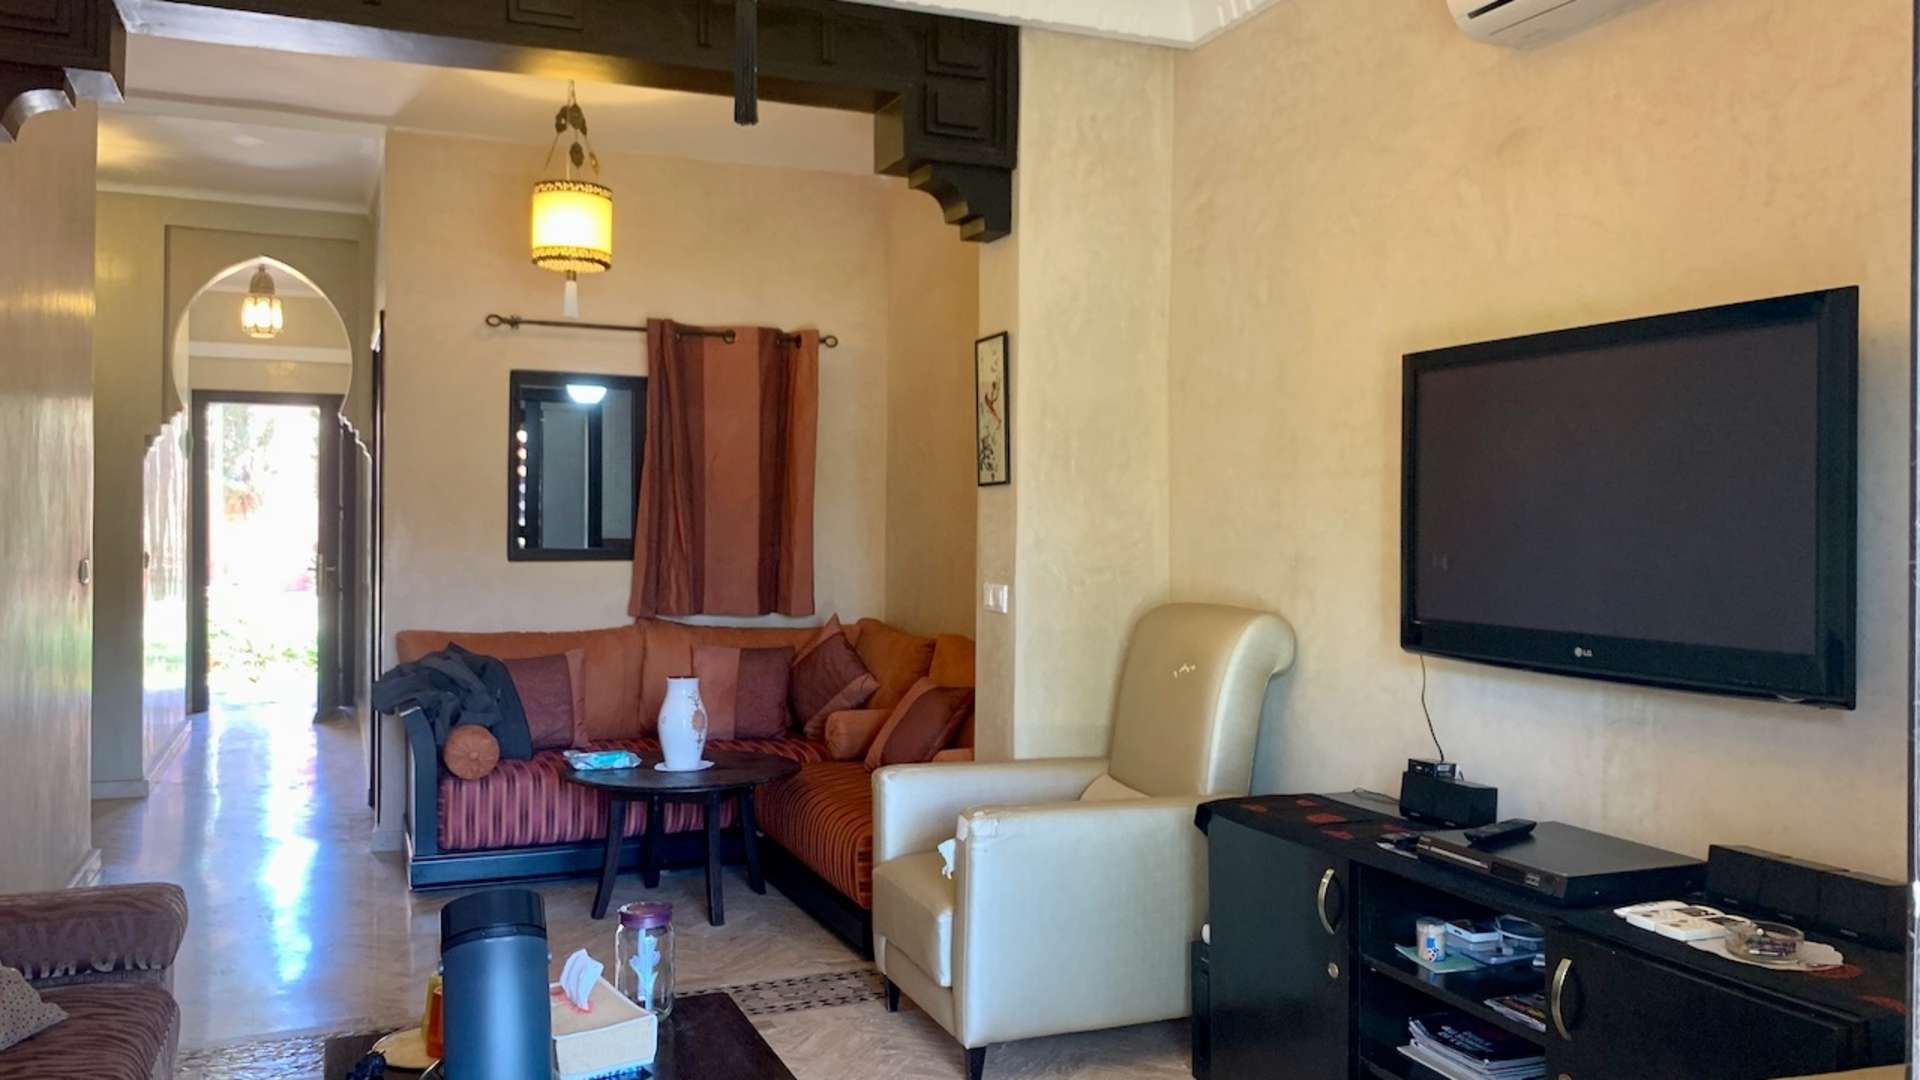 Vente,Appartement,Vente Appartement Marrakech Rez-de-Jardin 2 chambres salon. Résidence sécurisée avec piscine,Marrakech,Atlas Golf Resort 